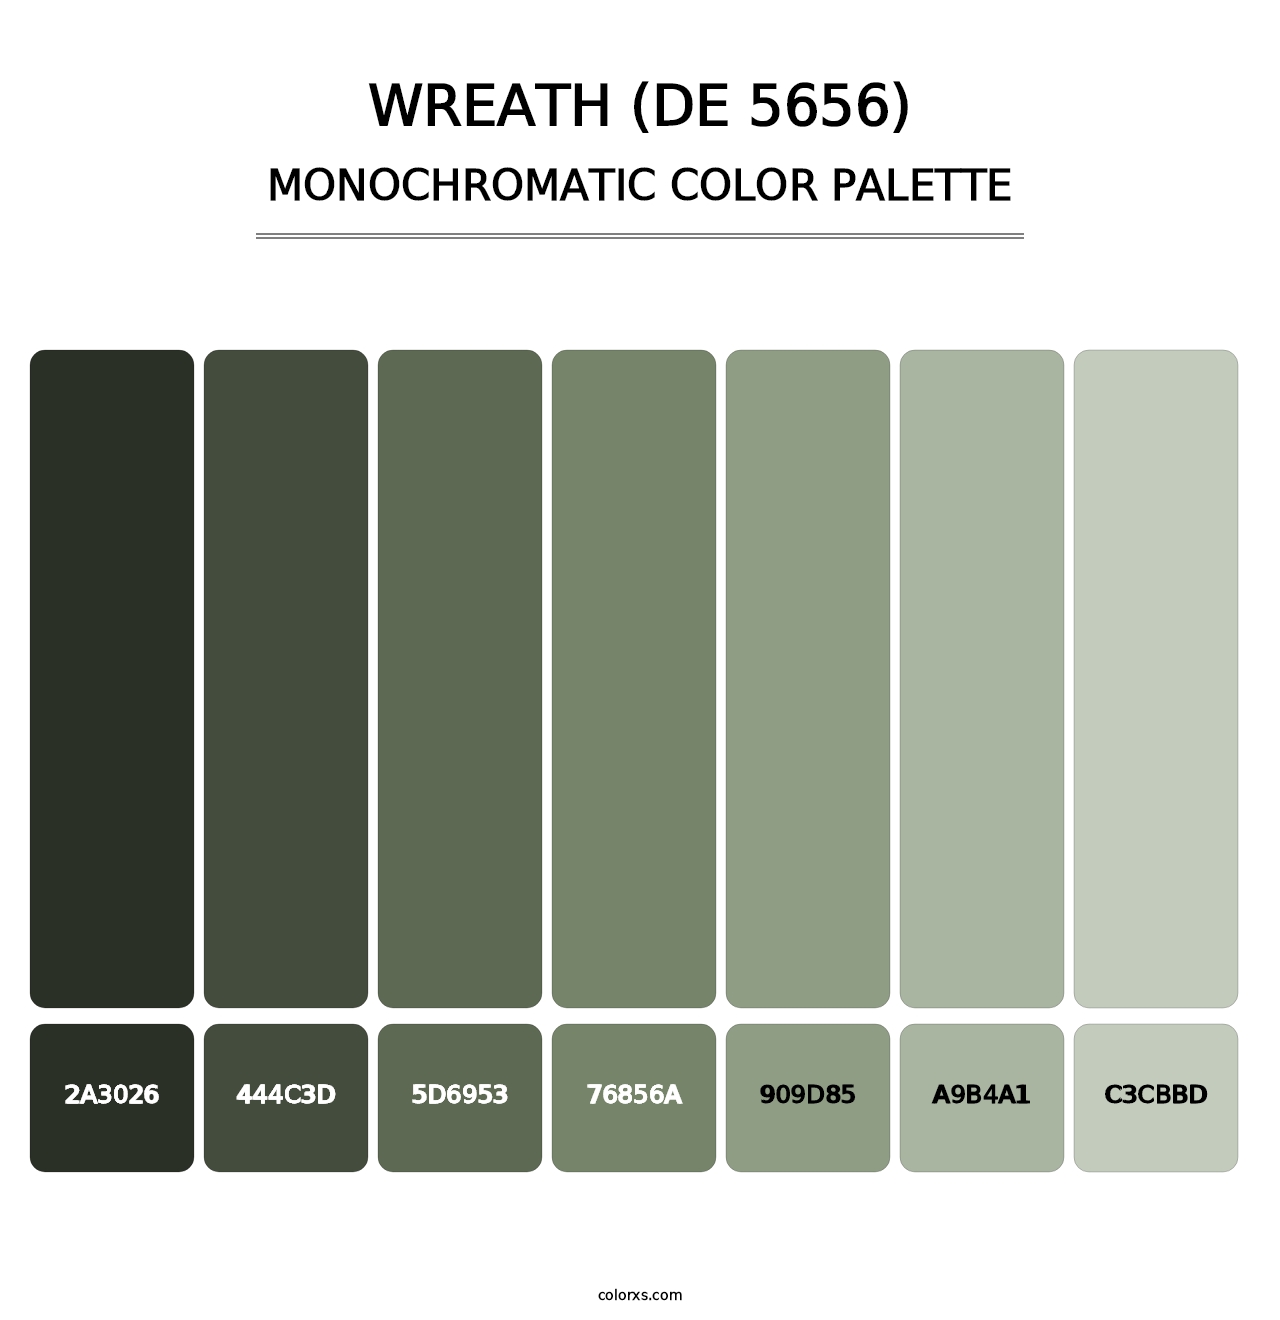 Wreath (DE 5656) - Monochromatic Color Palette